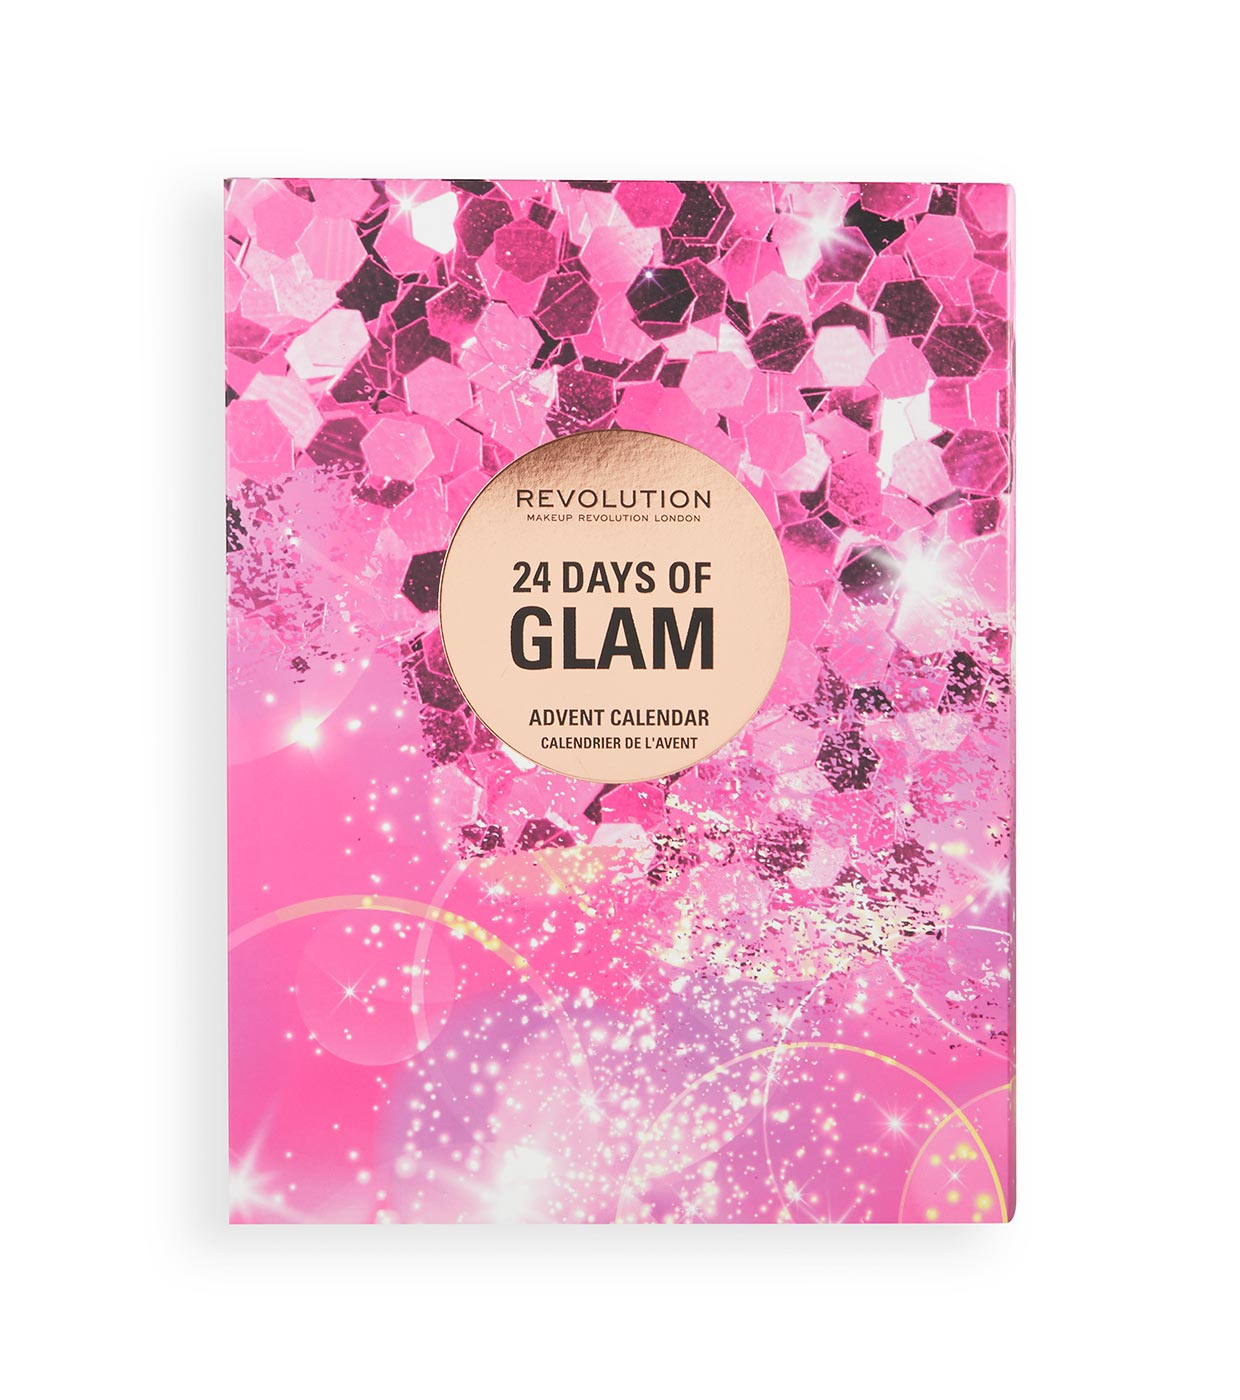 Acquistare Revolution - Calendario dell'Avvento 24 Days Of Glam